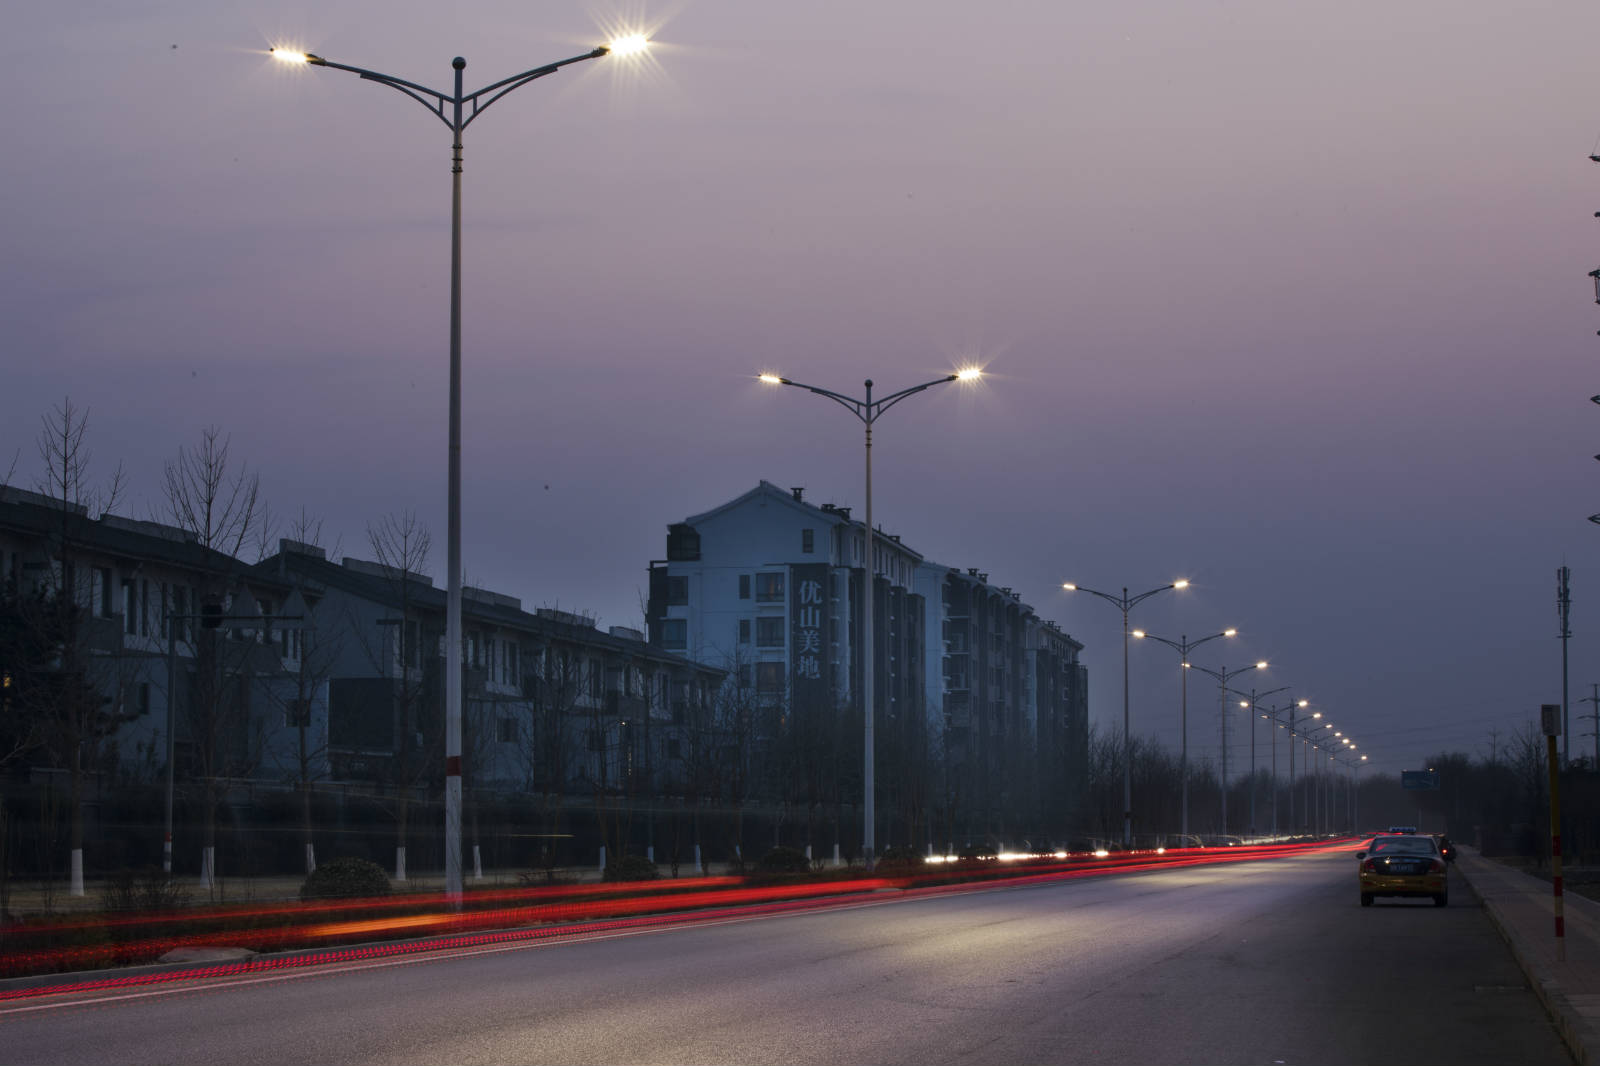 天竺房地产开发区道路照明合同能源管理（EMC）项目——2018神灯奖申报工程